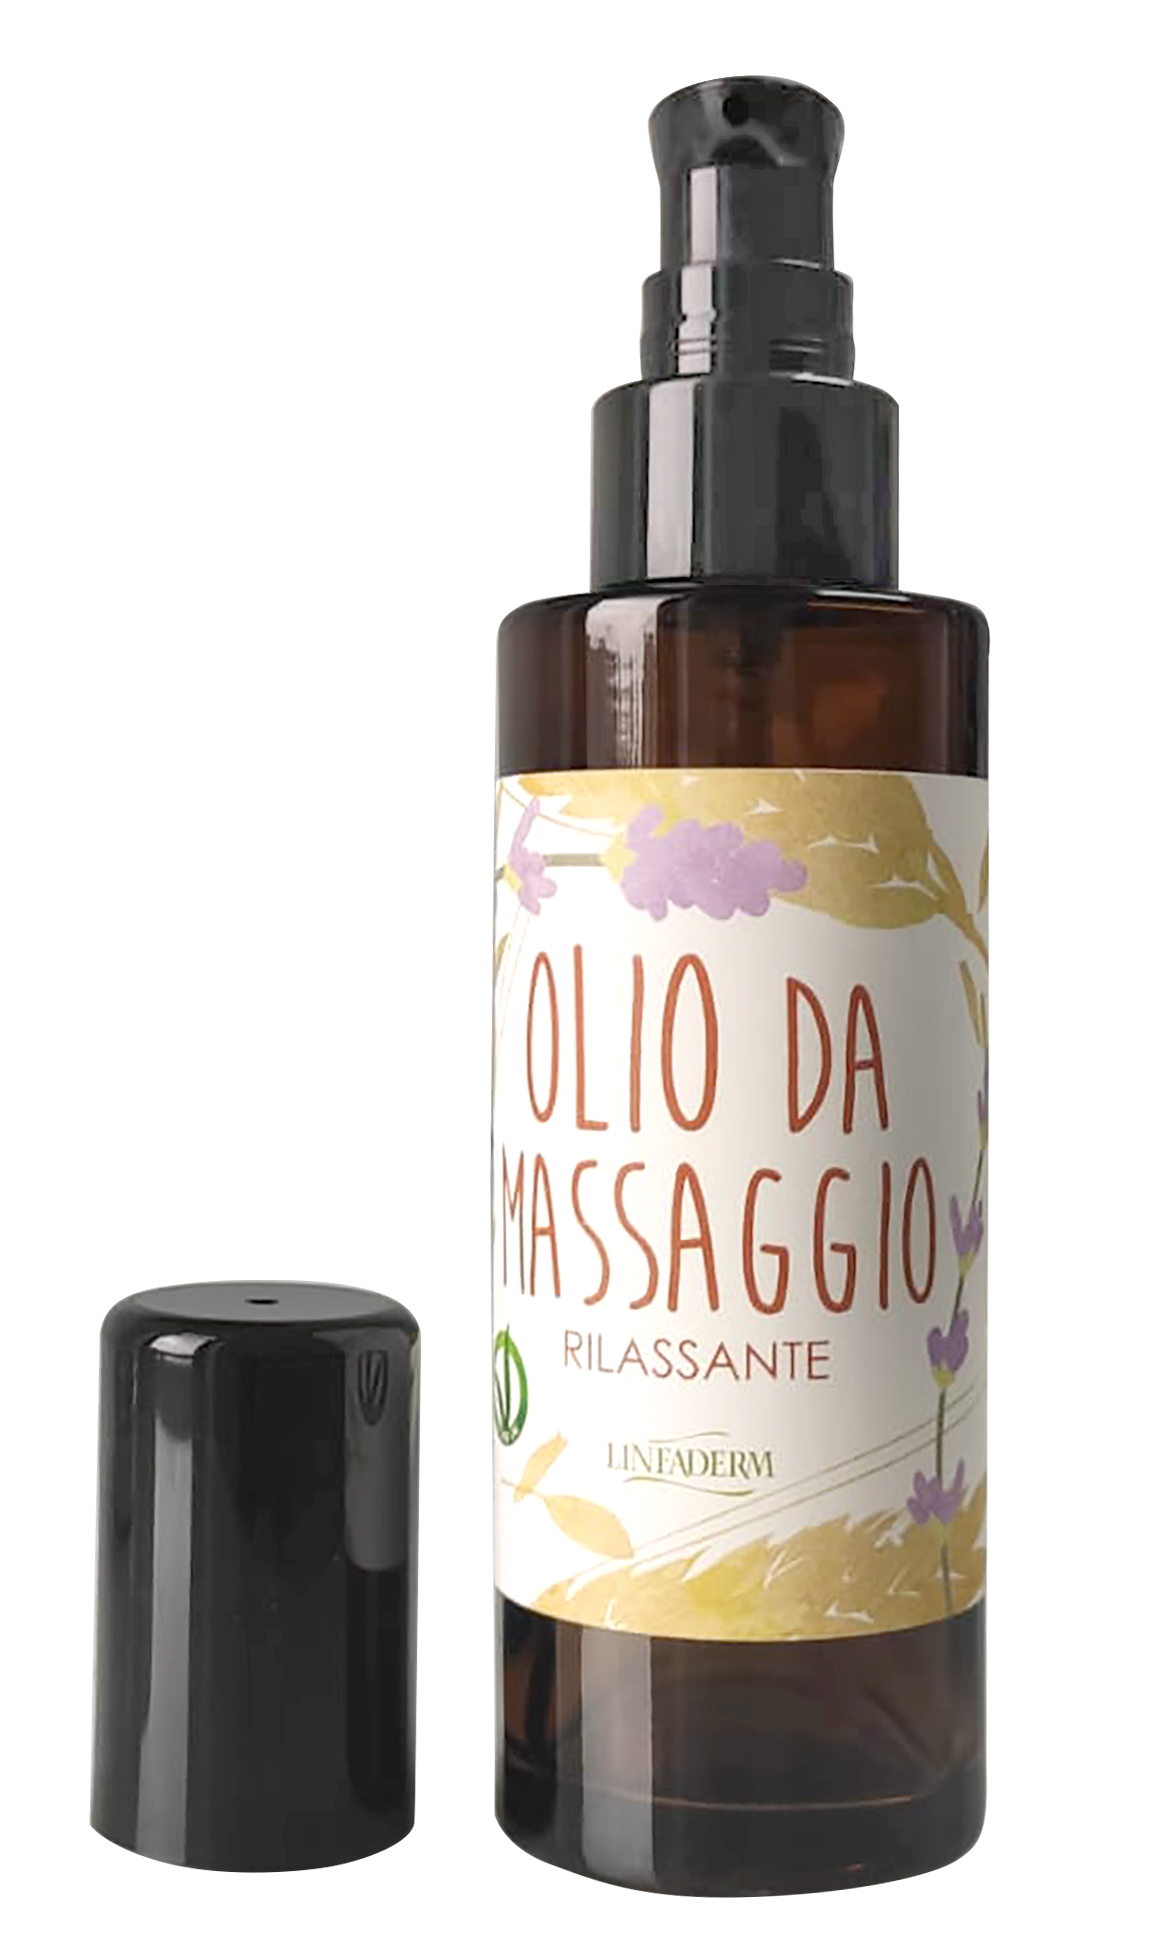 Olio da massaggio rilassante –100 ml - Linfaderm - cosmesi naturale